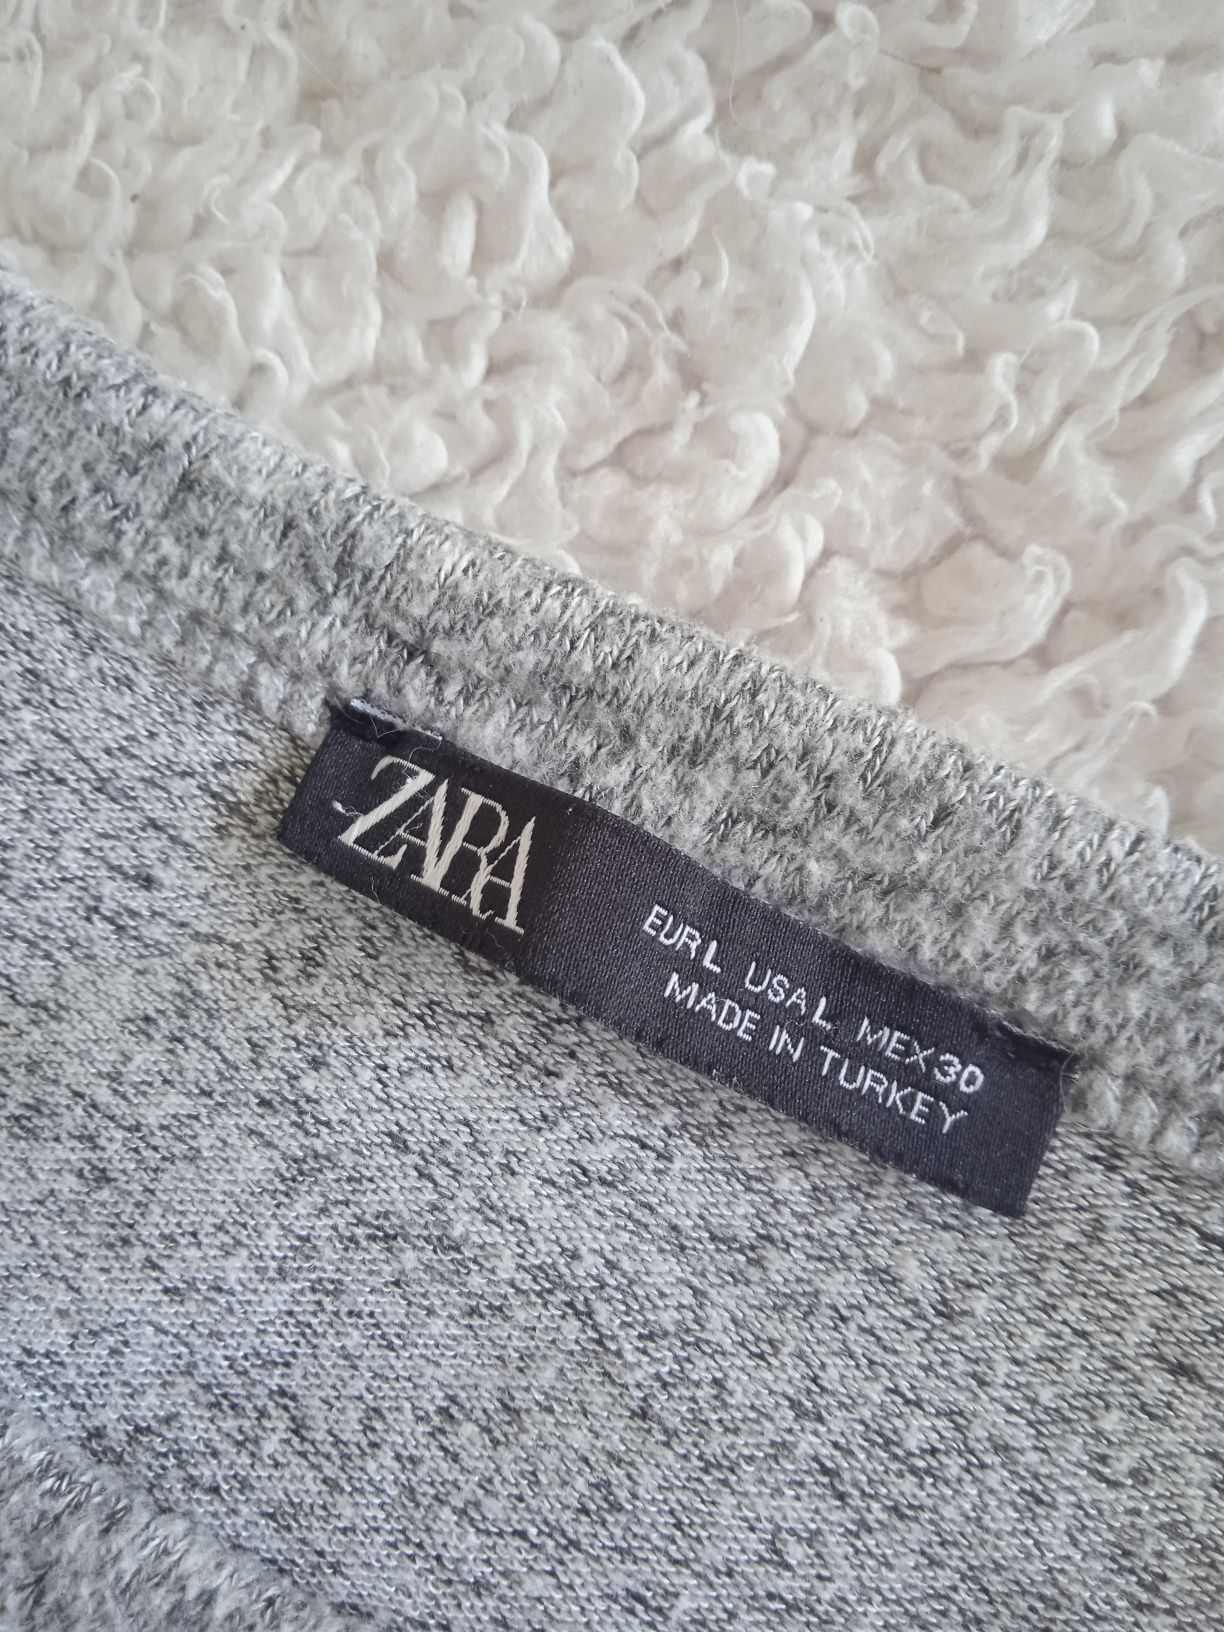 Szary sweterek z Zary z brylancikami rozmiar S-L